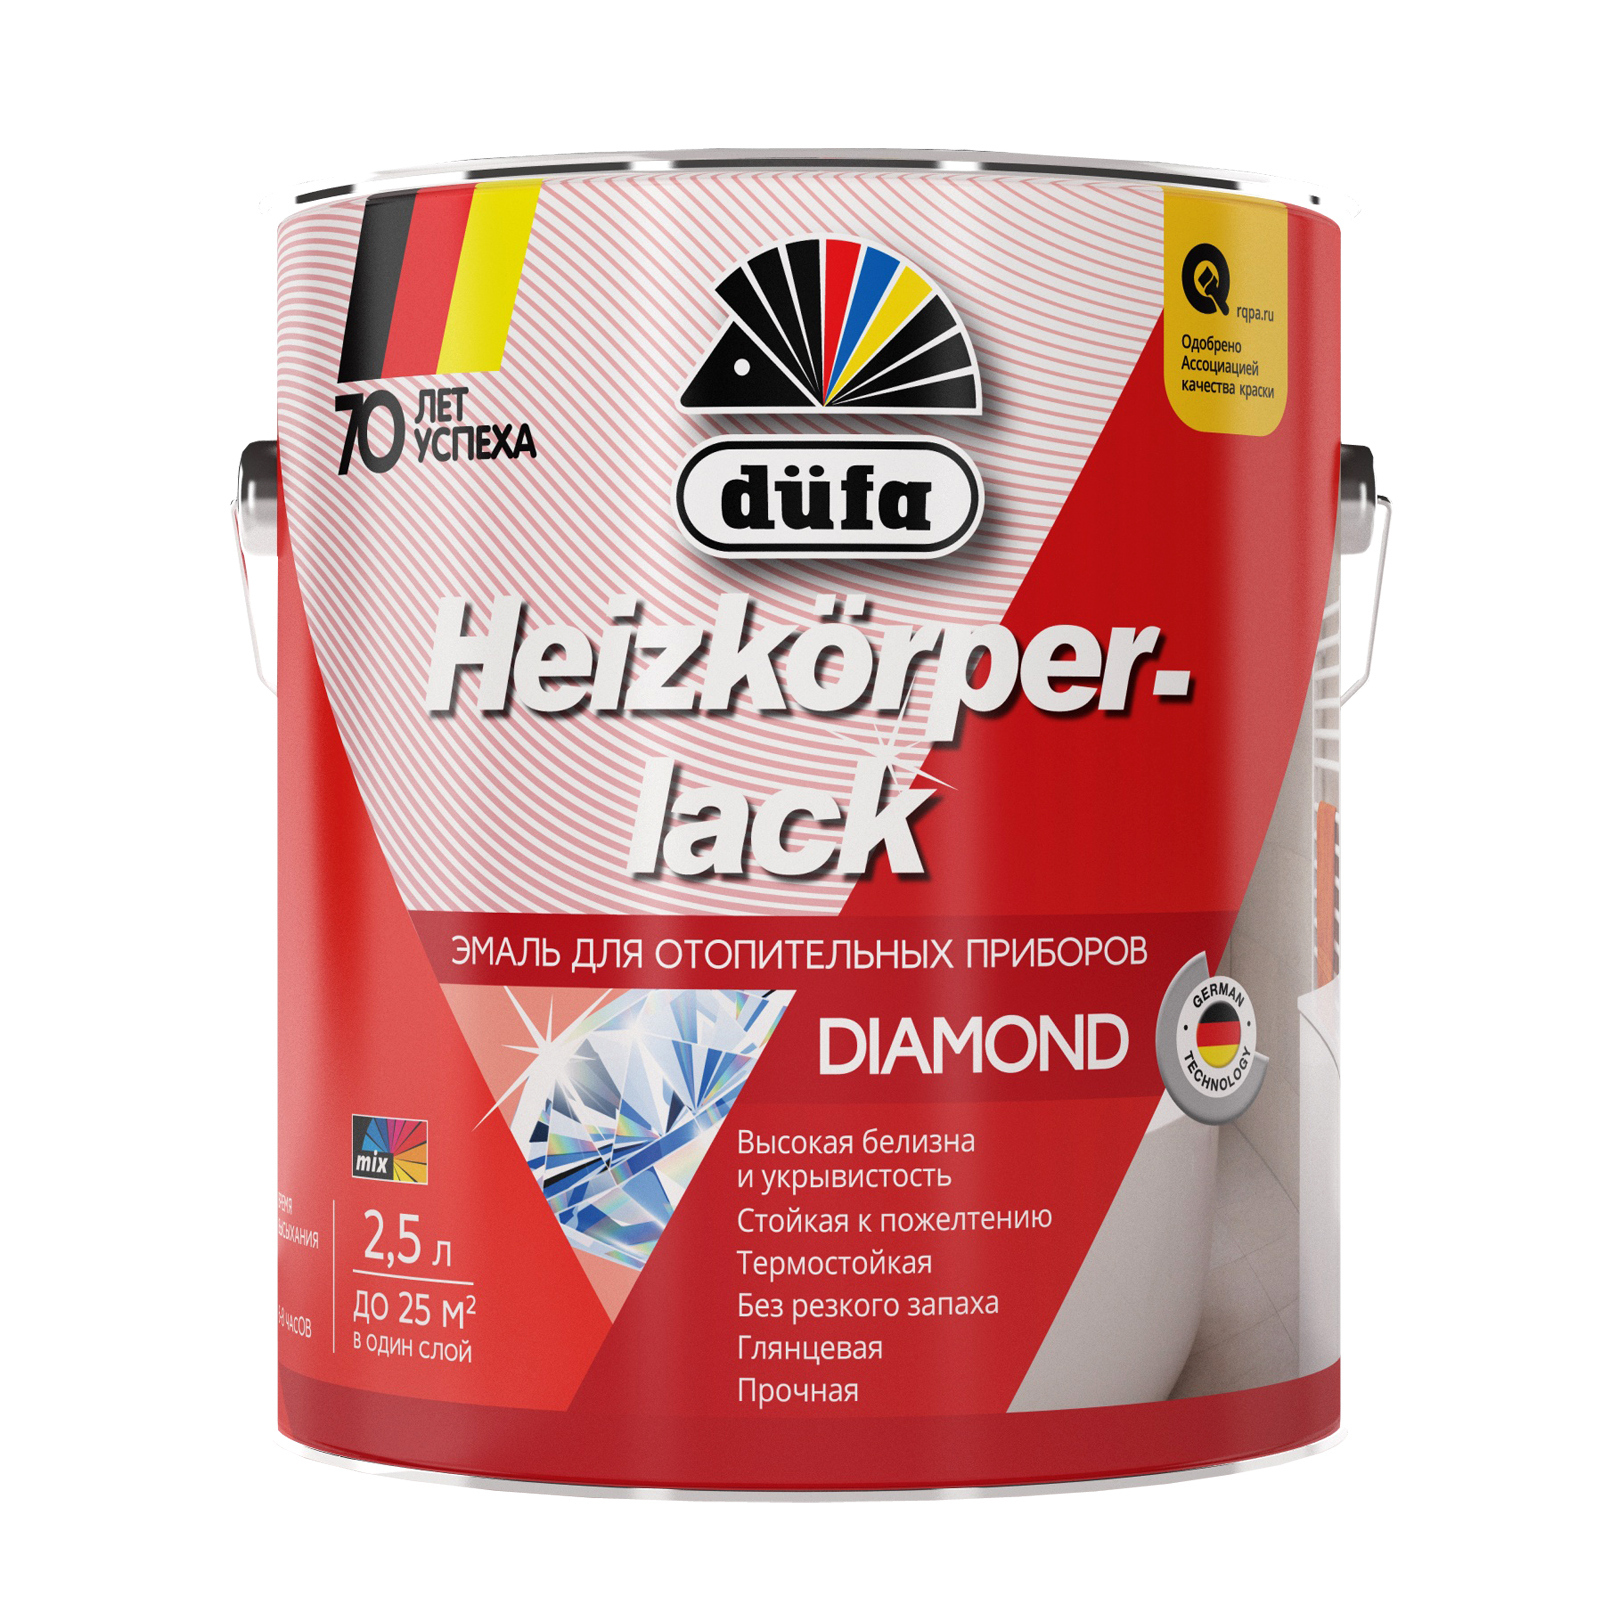 Эмаль для радиаторов Dufa Heizkorperlack глянцевая белая 2,5 л. эмаль для радиаторов pelligrina pearl акриловая полуглянцевая белая 0 9 кг